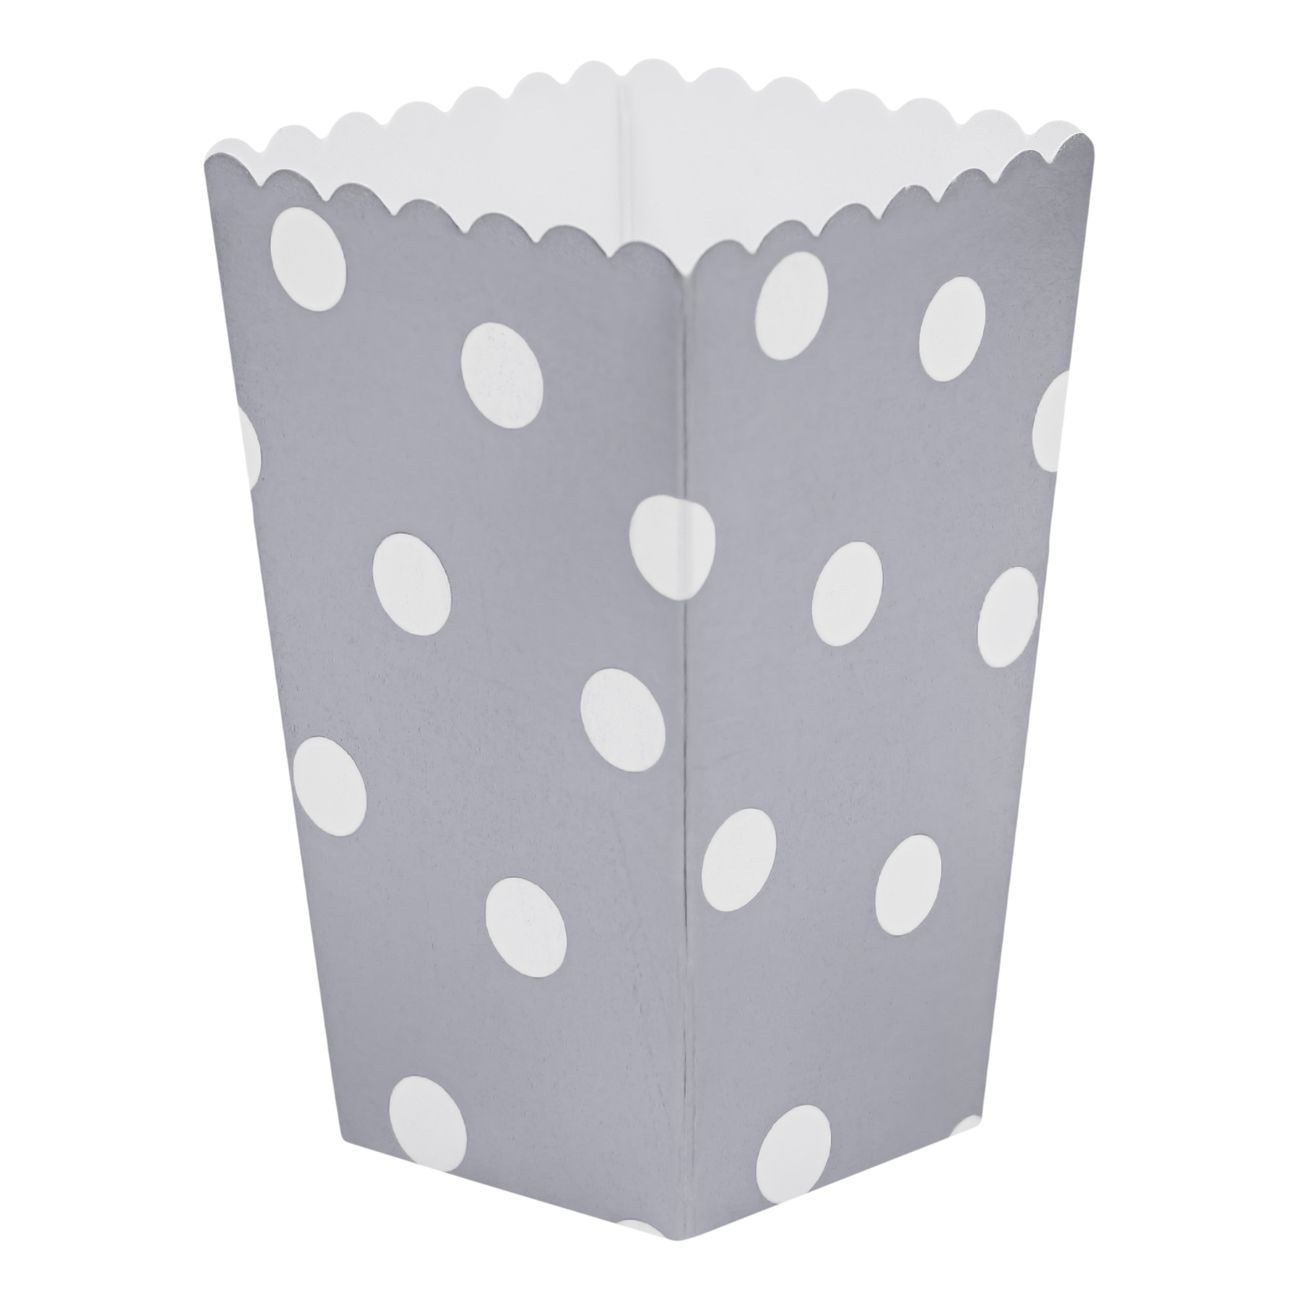 popcornboxar-silver-prickar-91997-1